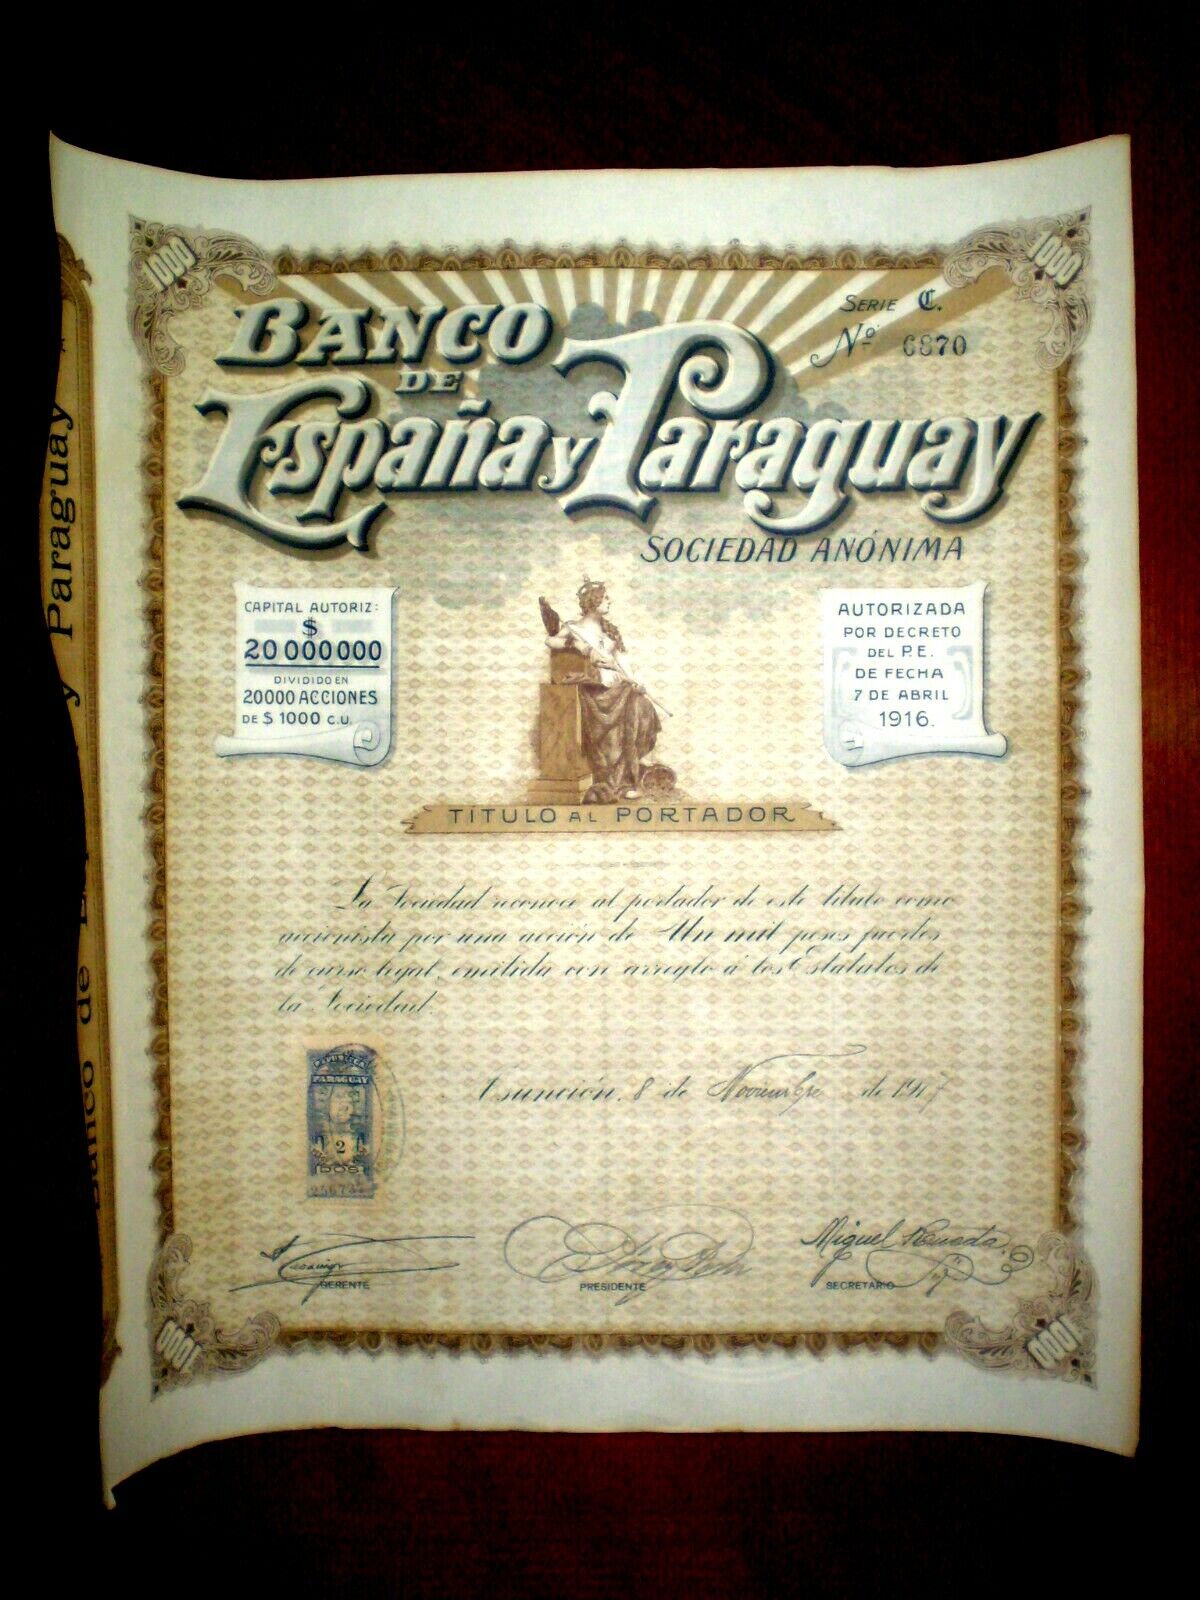 Banco de España y Paraguay 1917 certificado de acciones